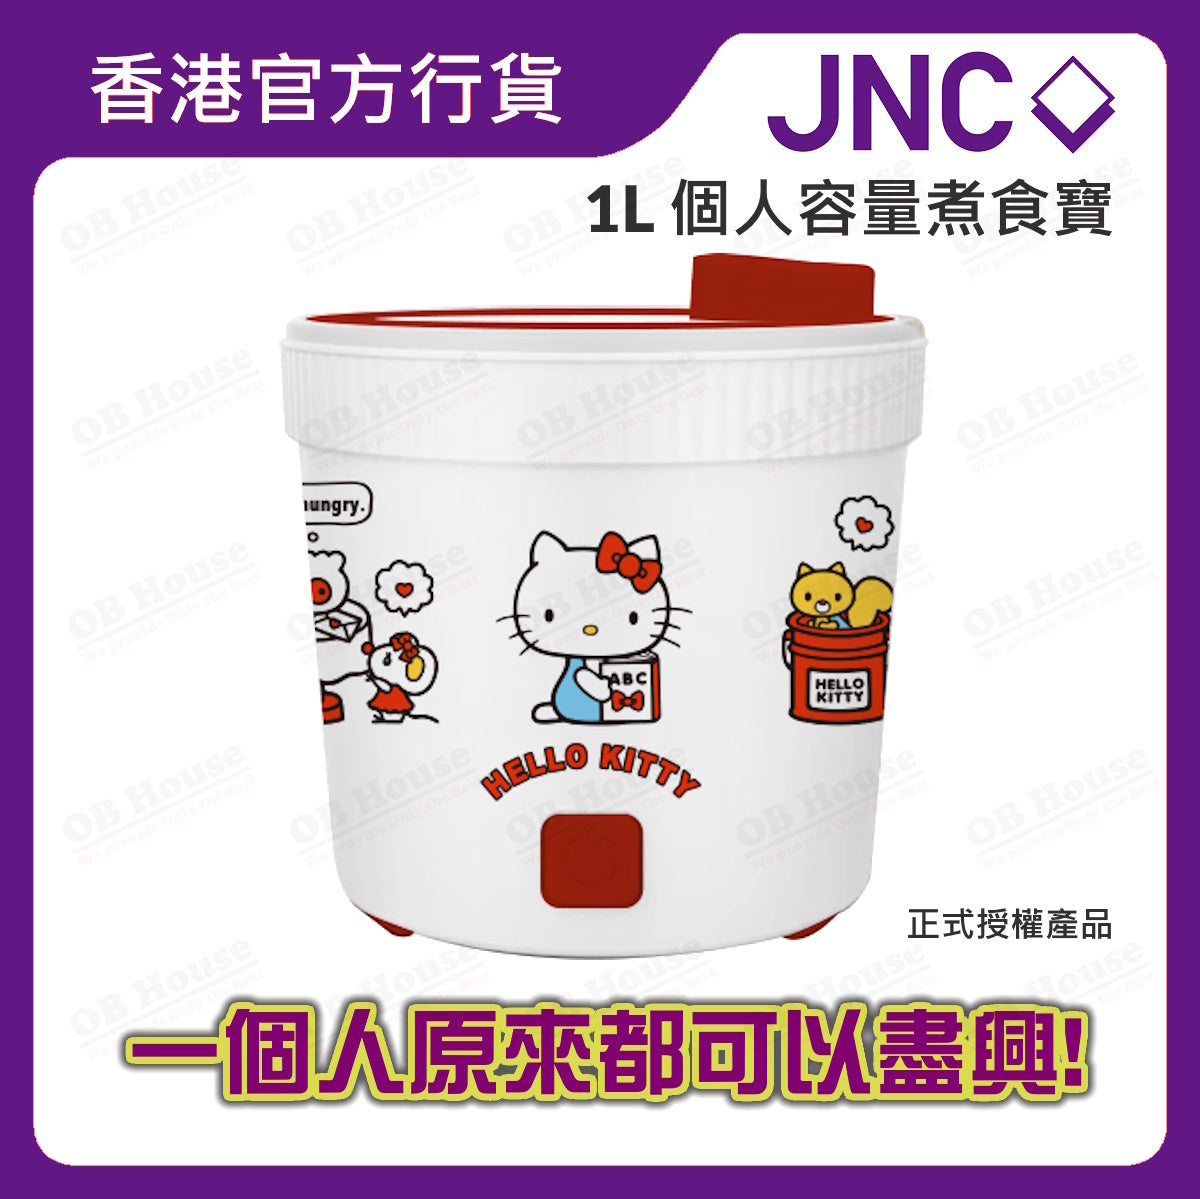 JNC x Hello Kitty 多功能煮食寶 1L (JNC-CK01MP-HK)